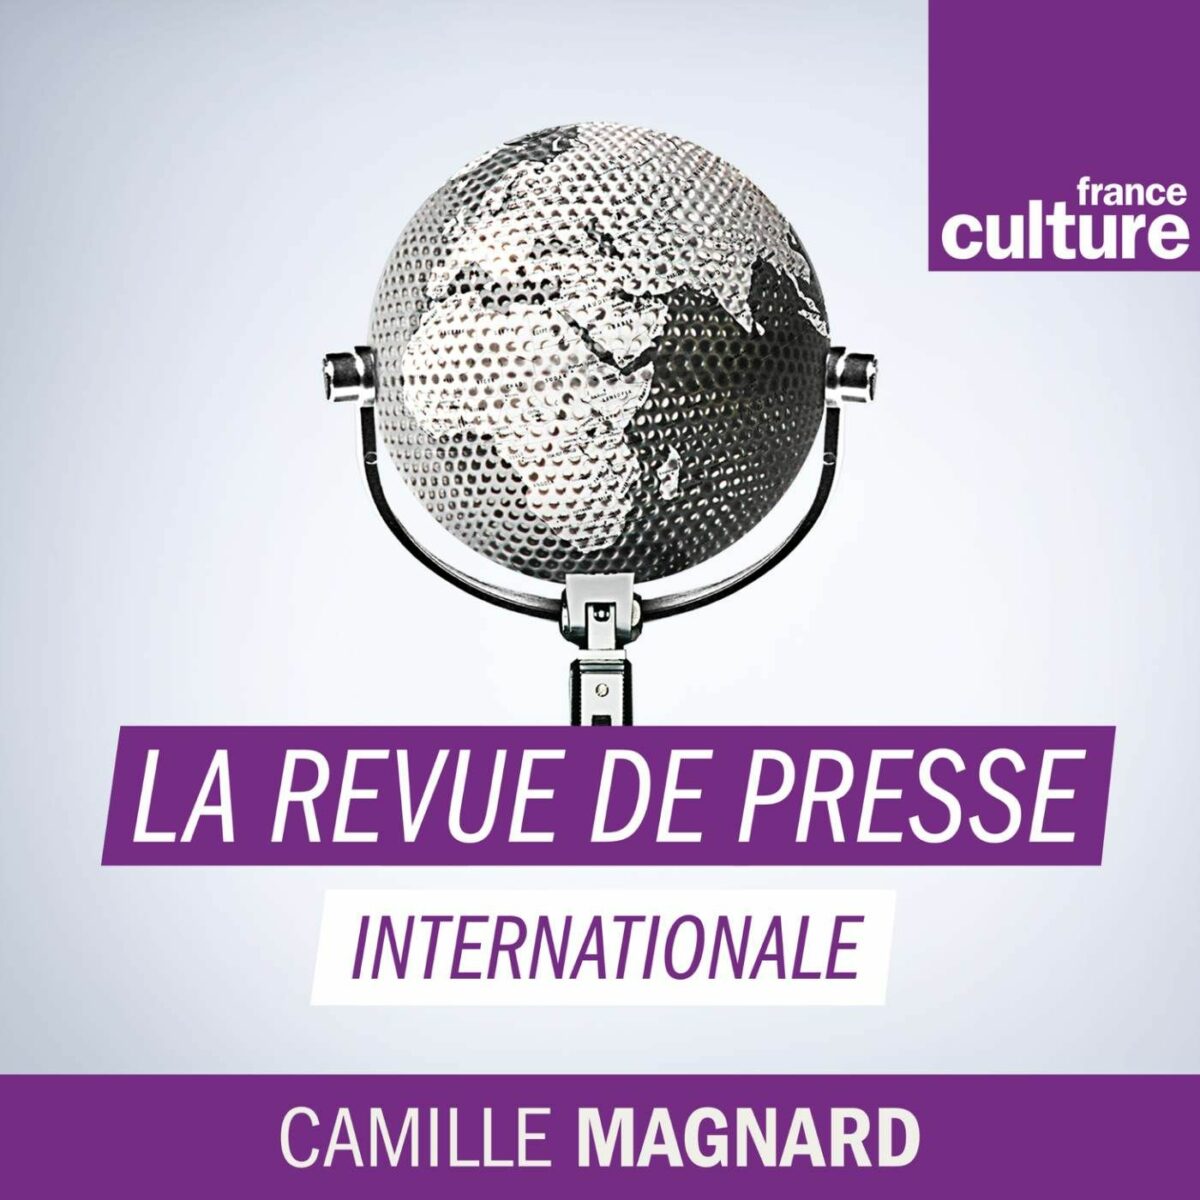 Vignette ou visuel de la revue de presse internationale de France Culture